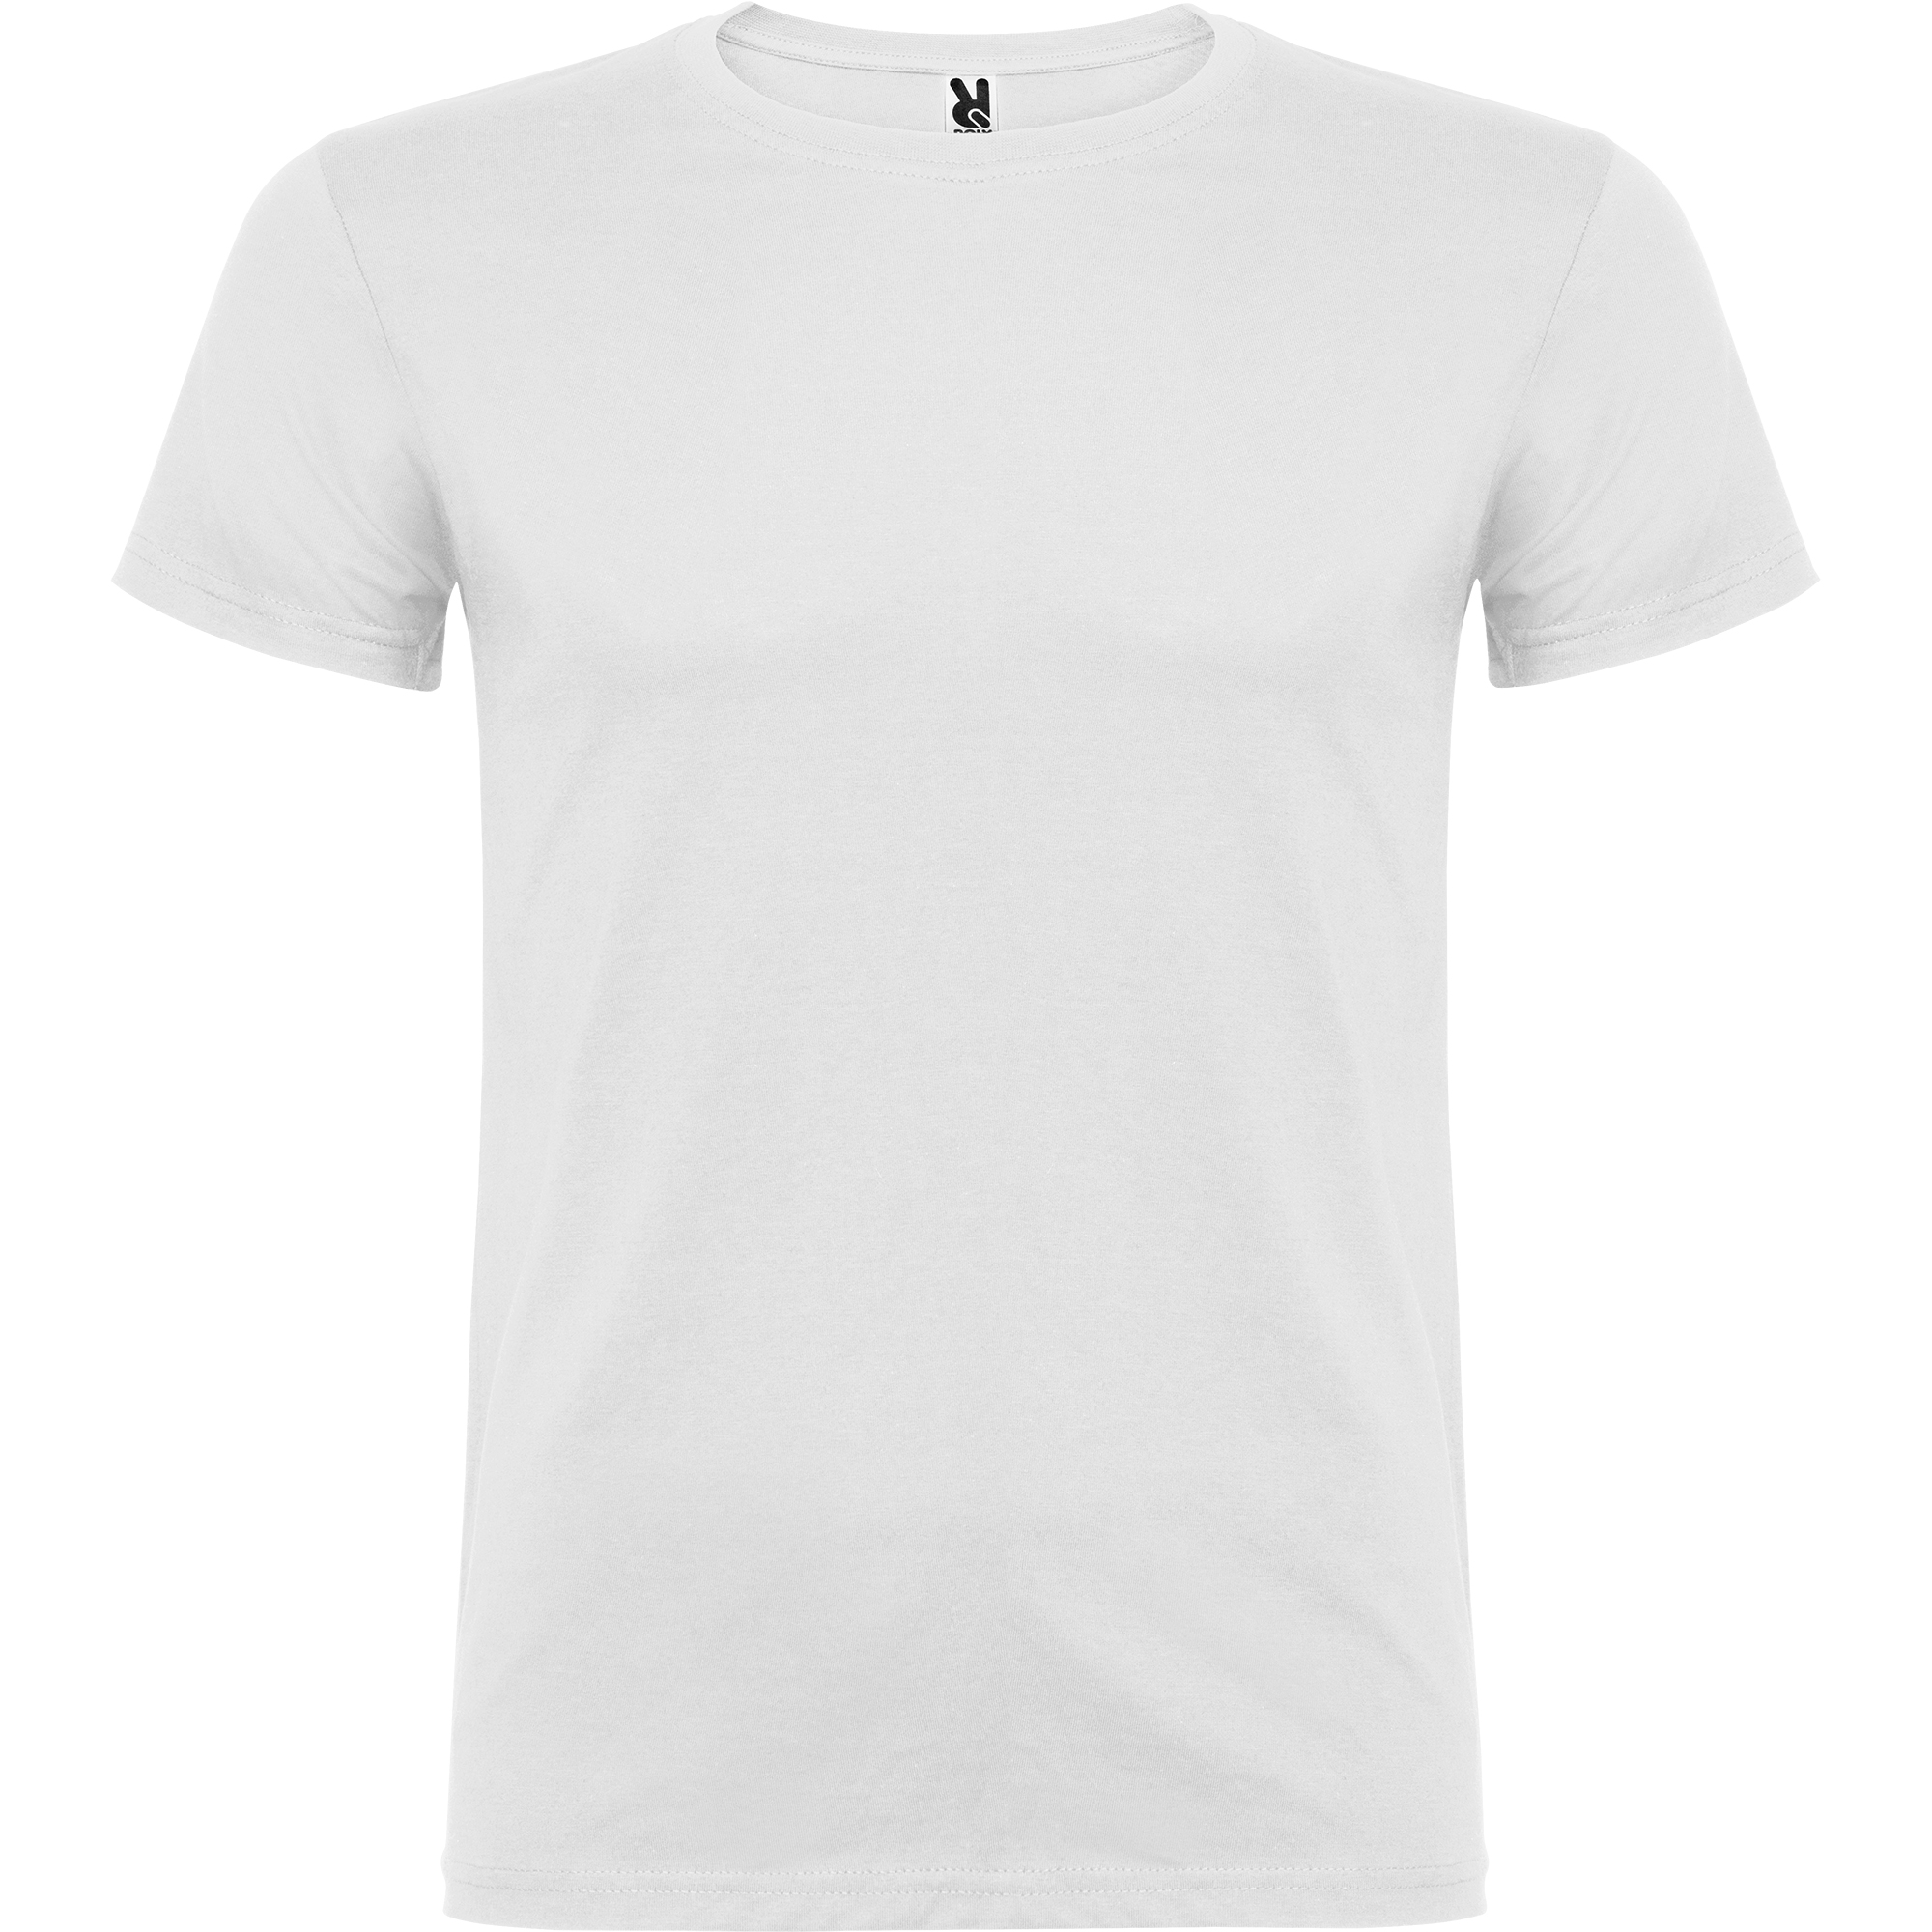   Camiseta cro beagle 6554 blca 